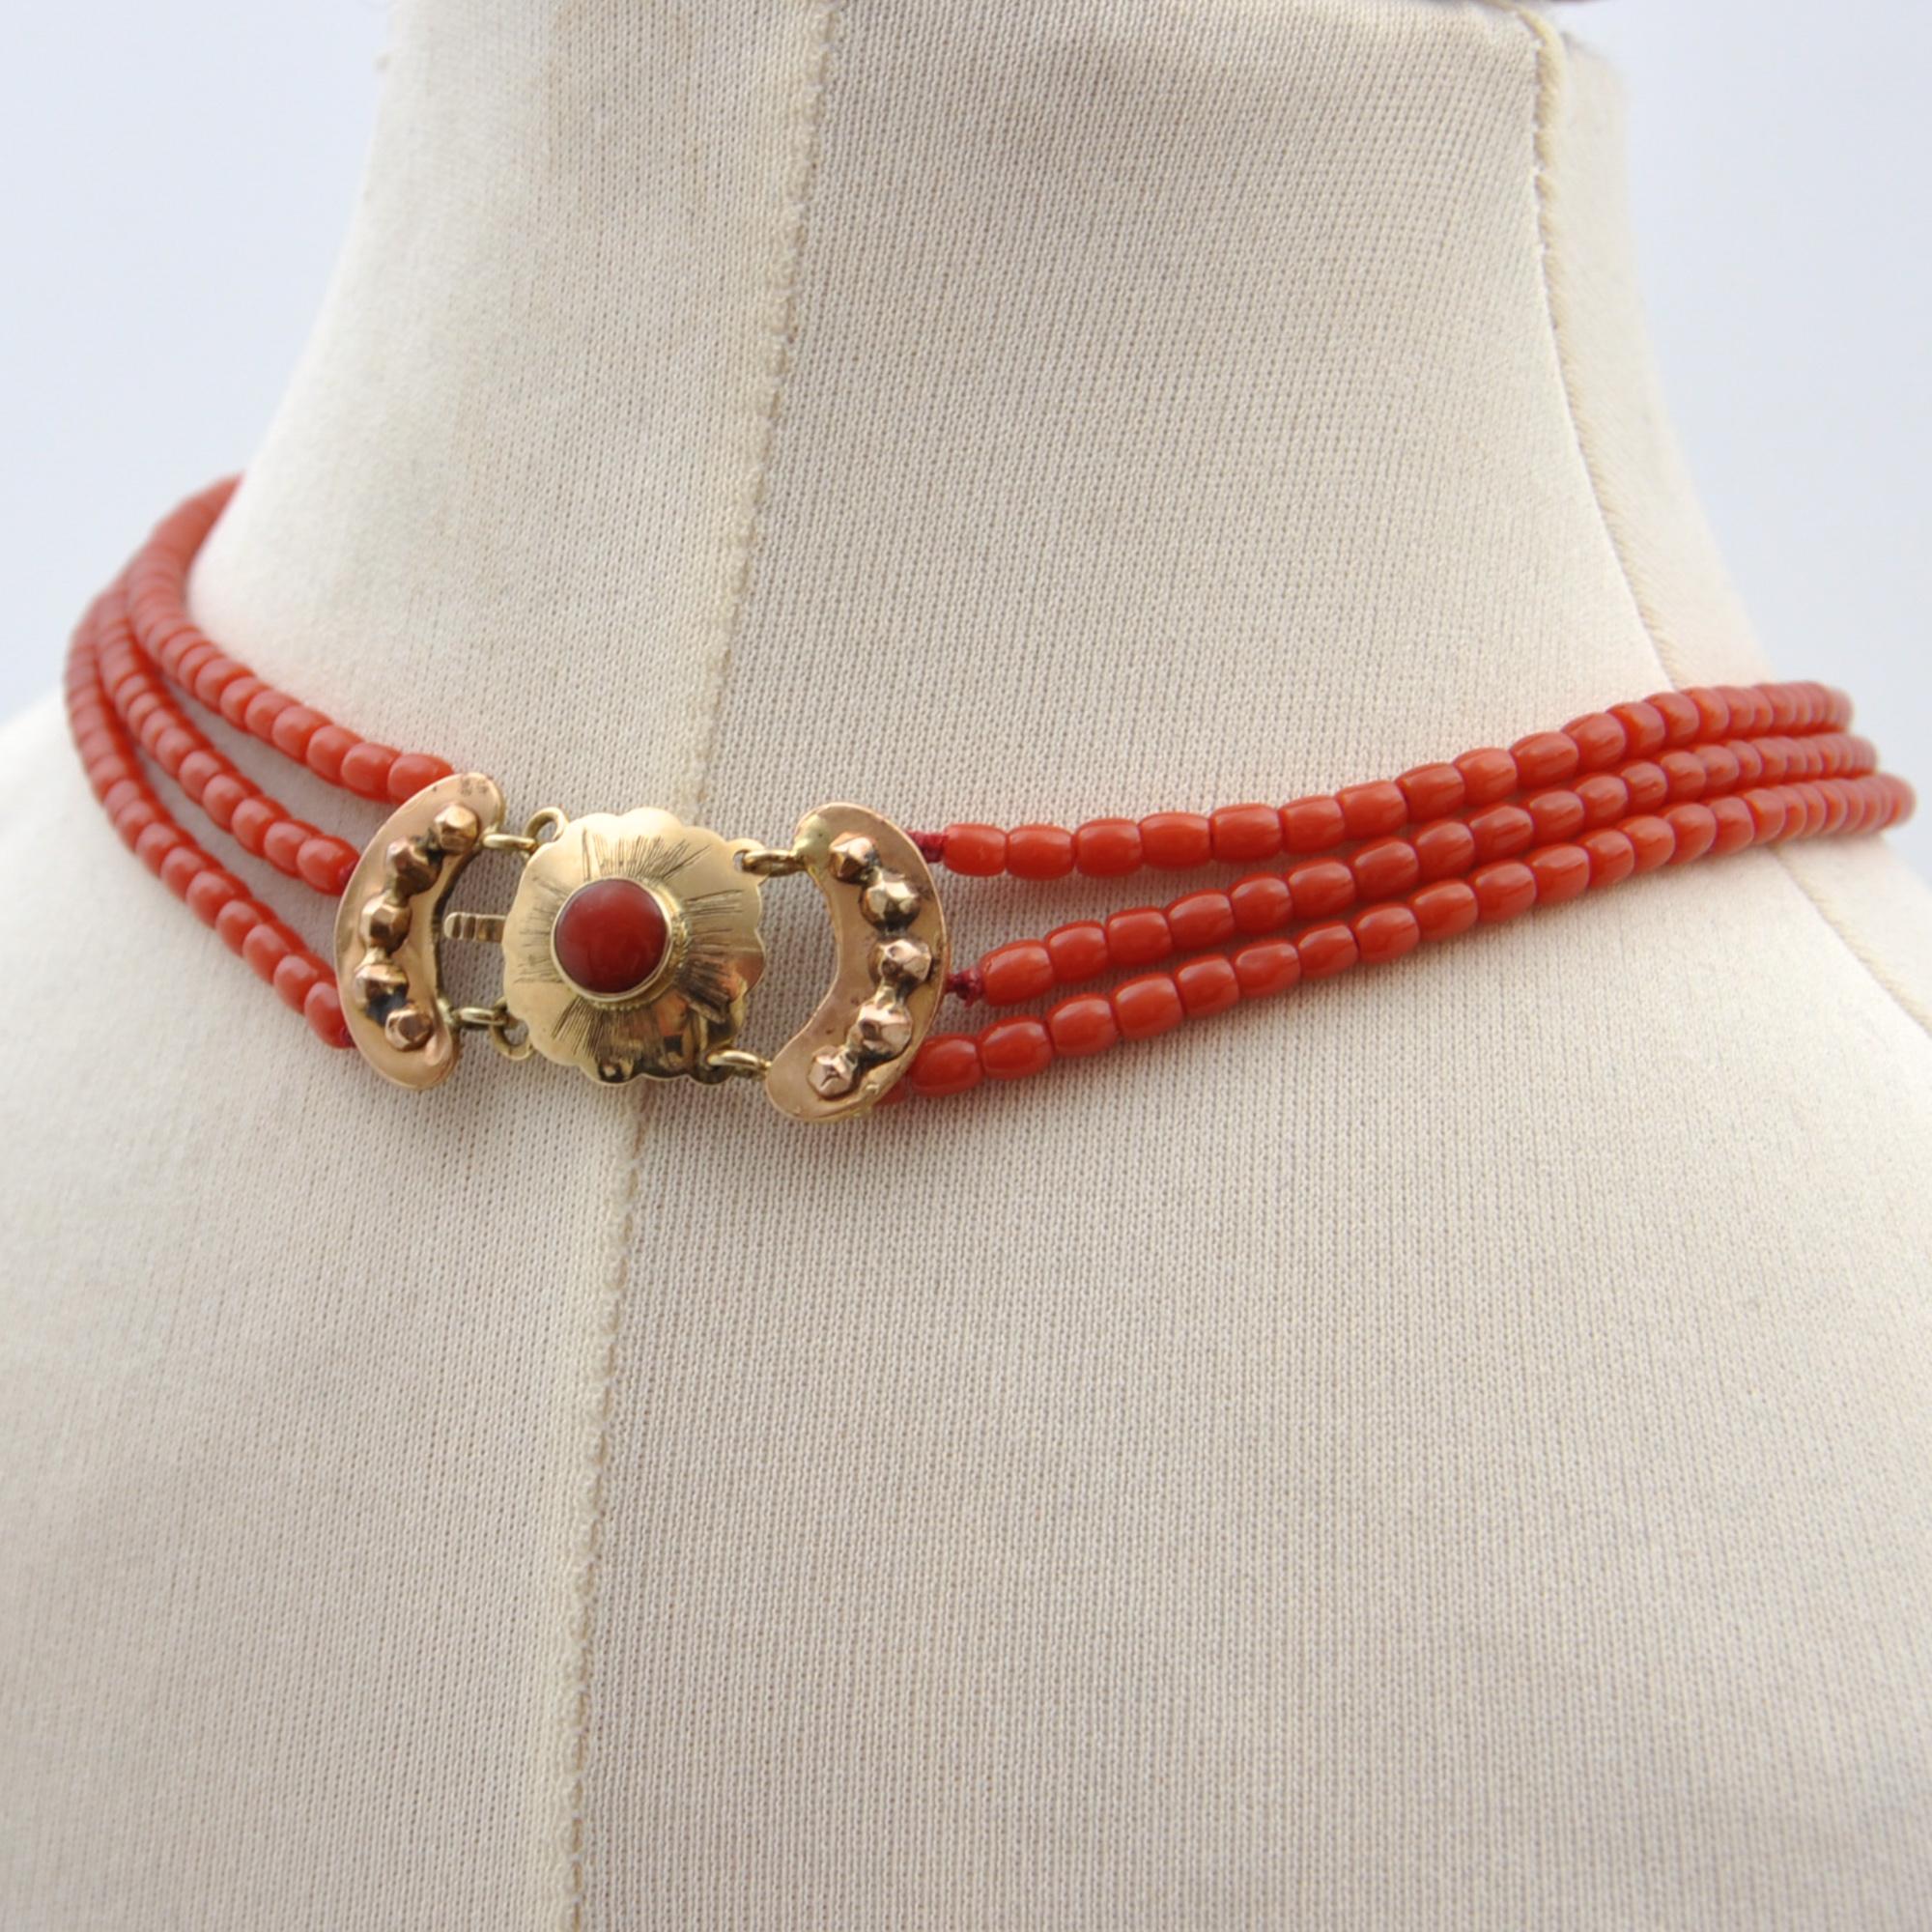 Ce collier antique en corail de la fin du XIXe siècle est doté d'un fermoir en or 14 carats. Le magnifique collier de corail à trois brins est enfilé avec de petites perles de corail et les brins. Le fermoir présente un magnifique motif festonné et